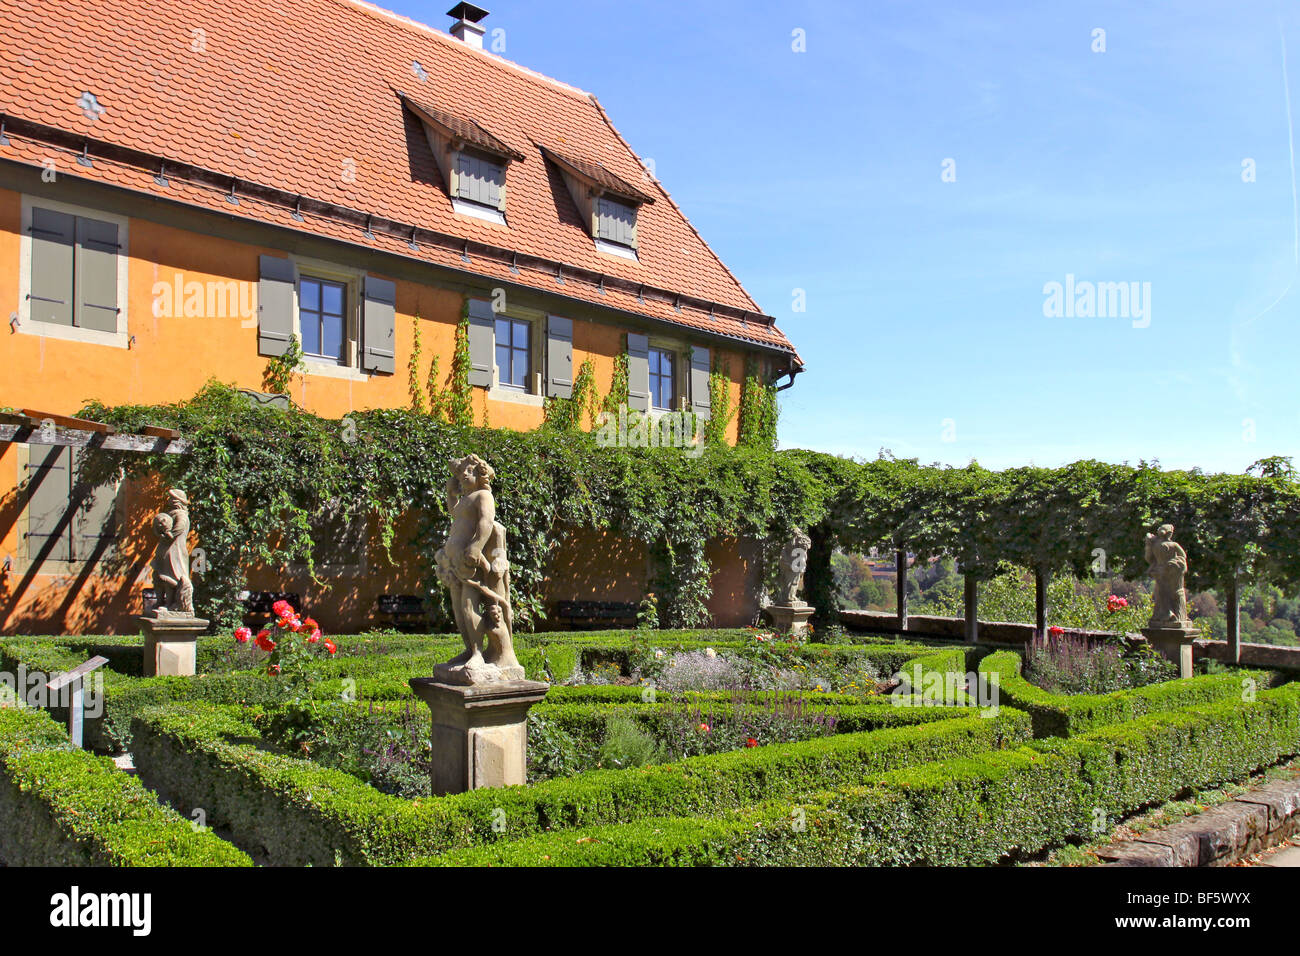 Deutschland, Germany  Rothenburg ob der Tauber Burggarten, castle garden Stock Photo